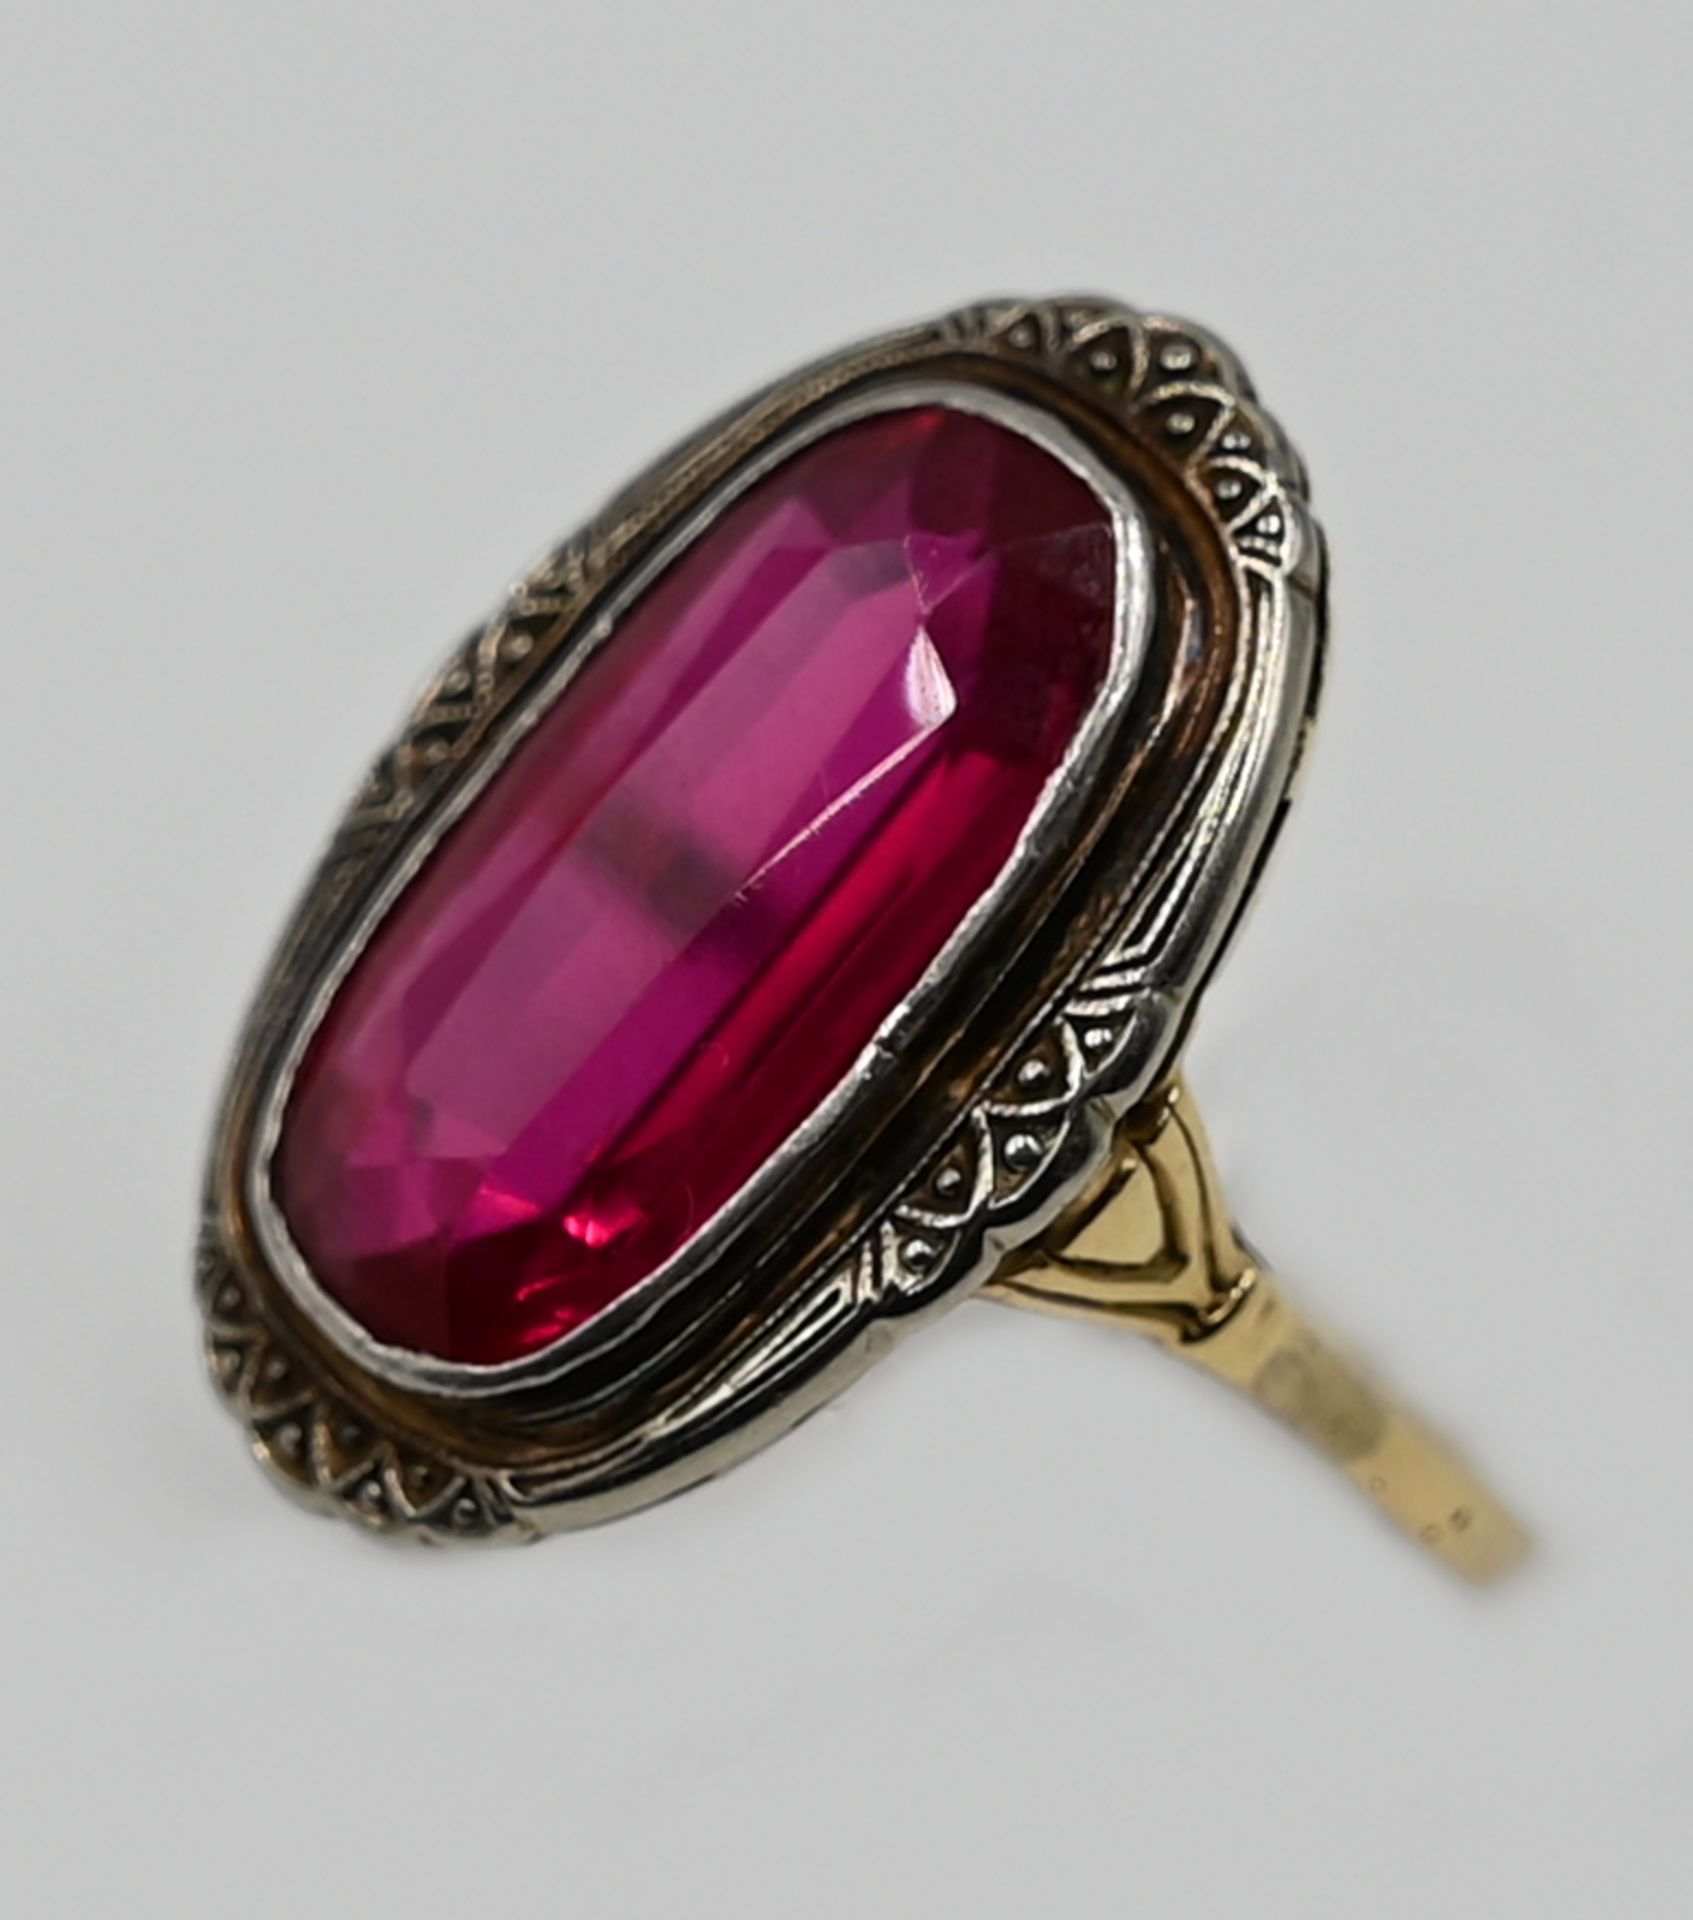 1 Damenring GG 14ct. u.a. um 1900 mit pinkem Stein, Ringgröße ca. 52,5, Asp./ Gsp. - Image 2 of 2